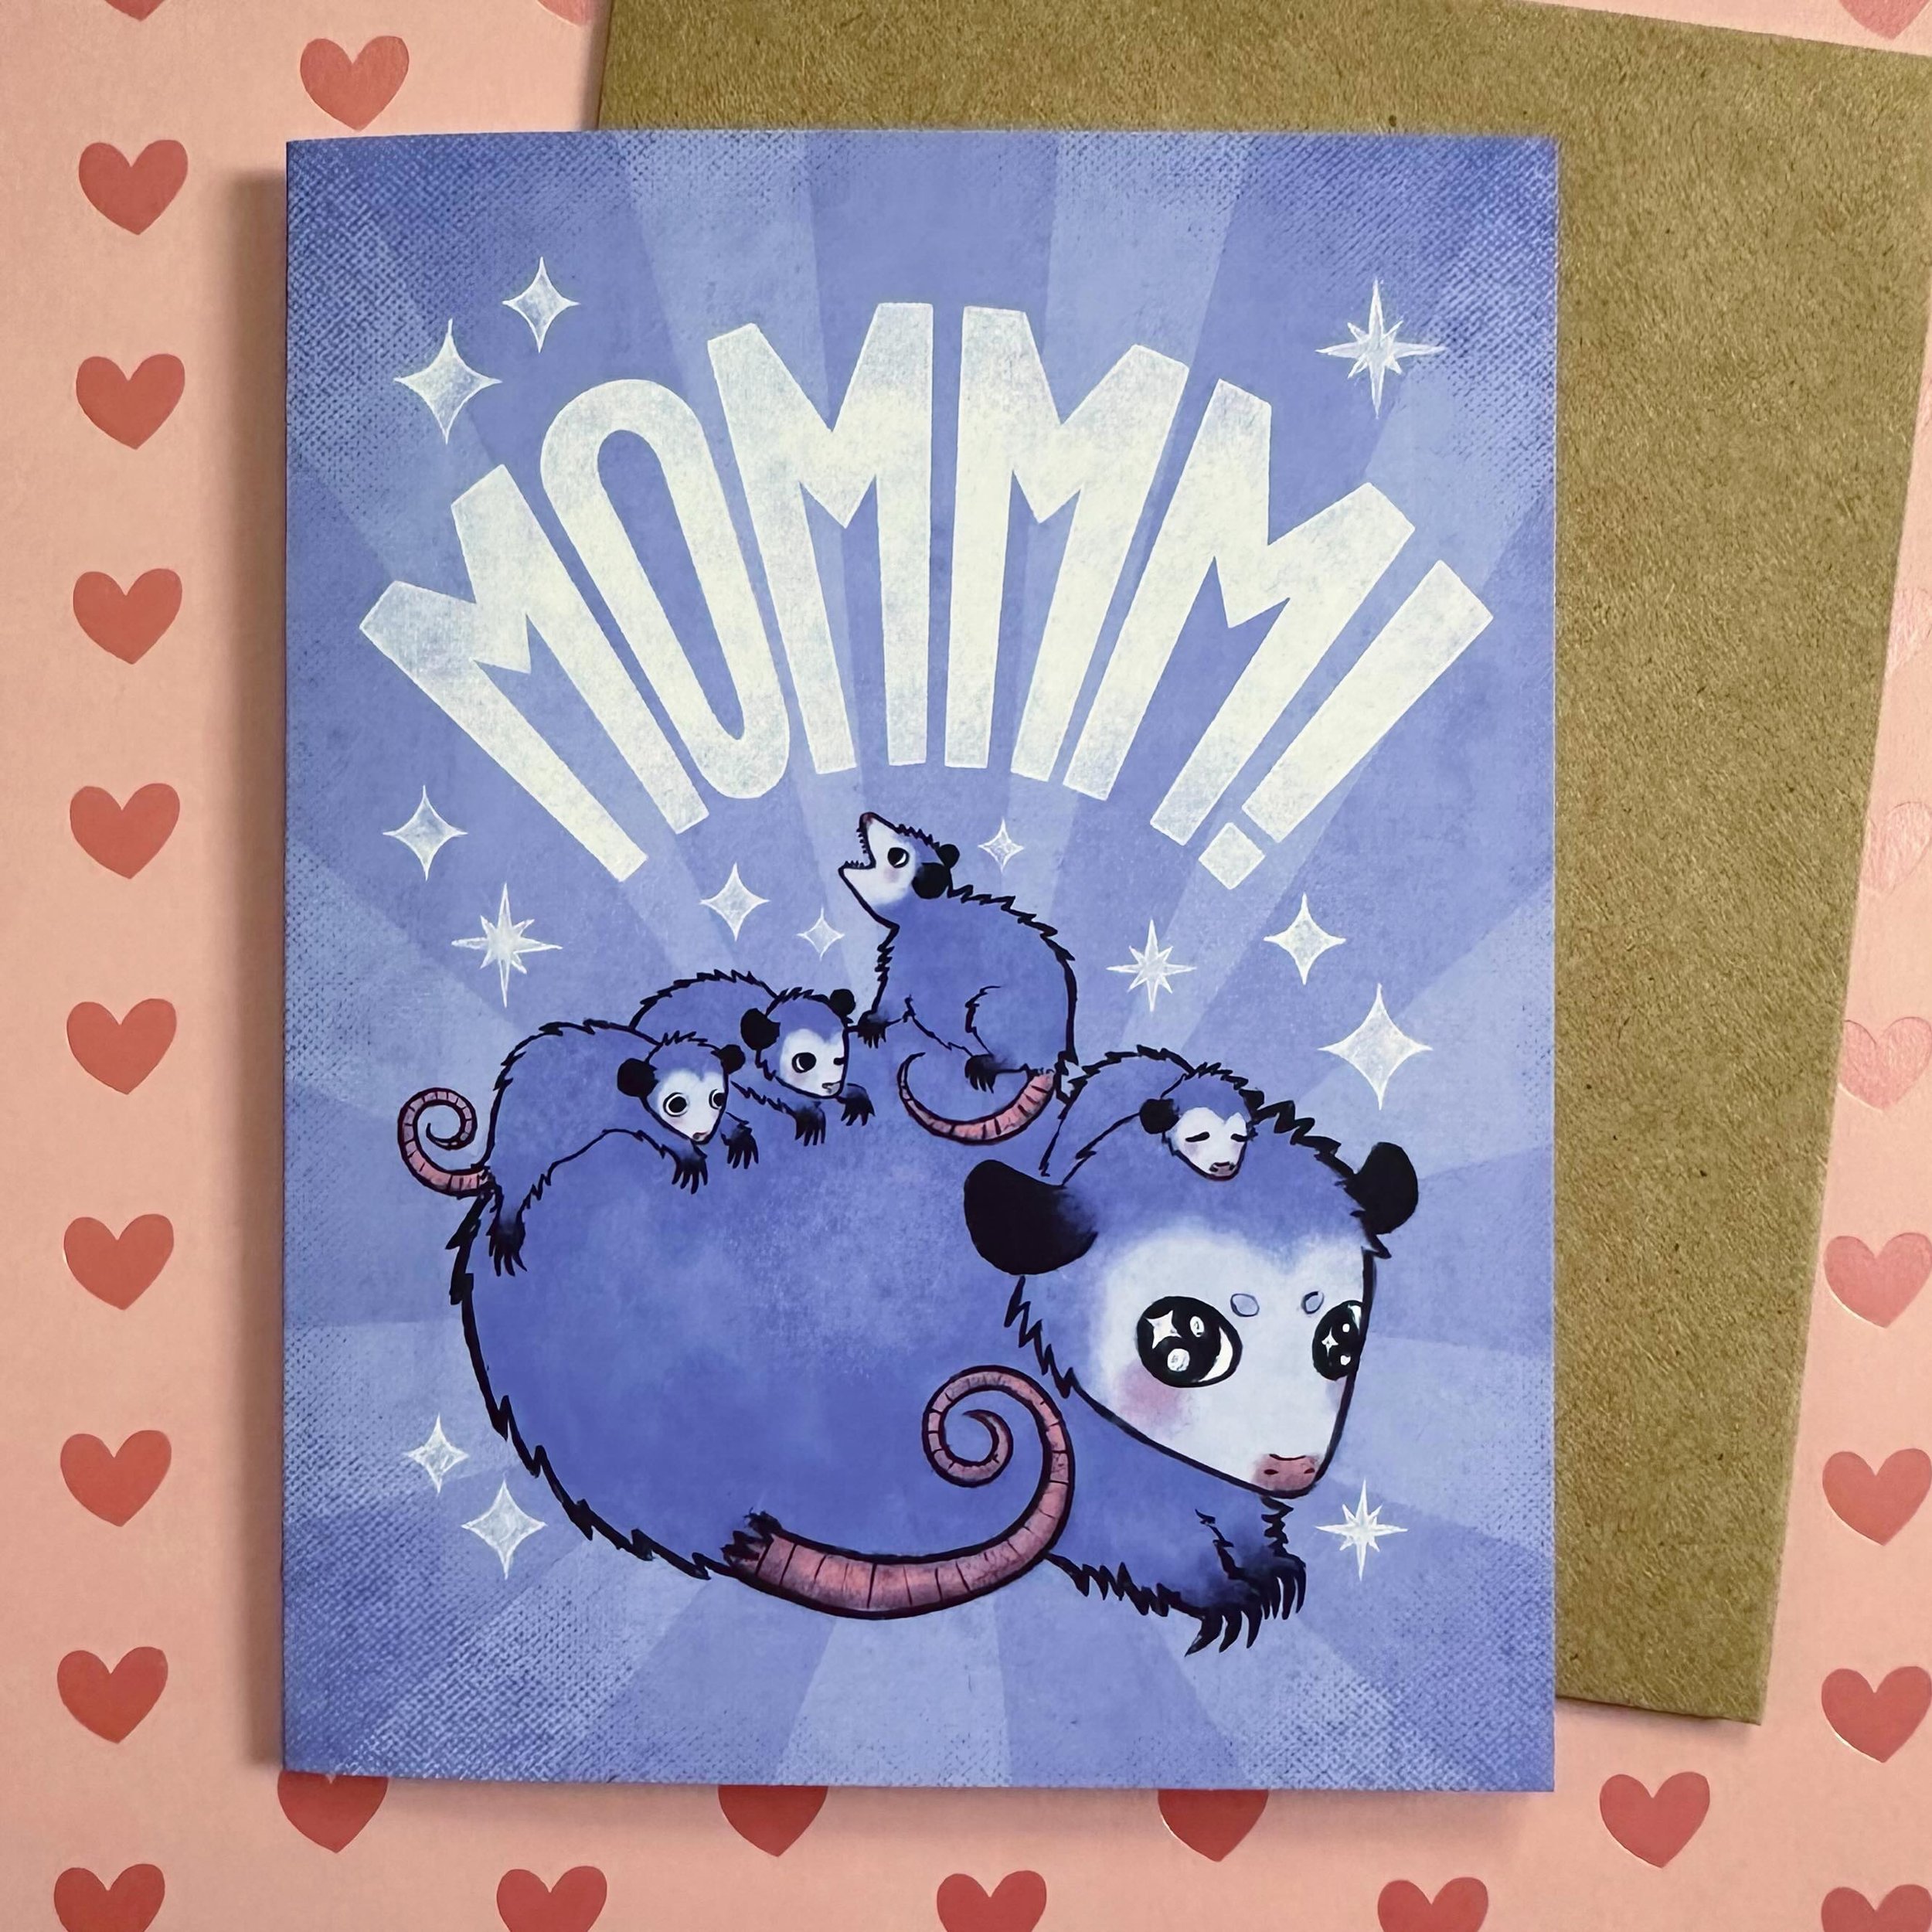 New moms day card! Opossum style! 

#oppossum #oppossumsofinstagram #oppossums #womenofillustration #illustration #adobefresco #adobefrescoillustration #adobefrescoart #neworleansartist #neworleans #neworleansart #neworleansartists